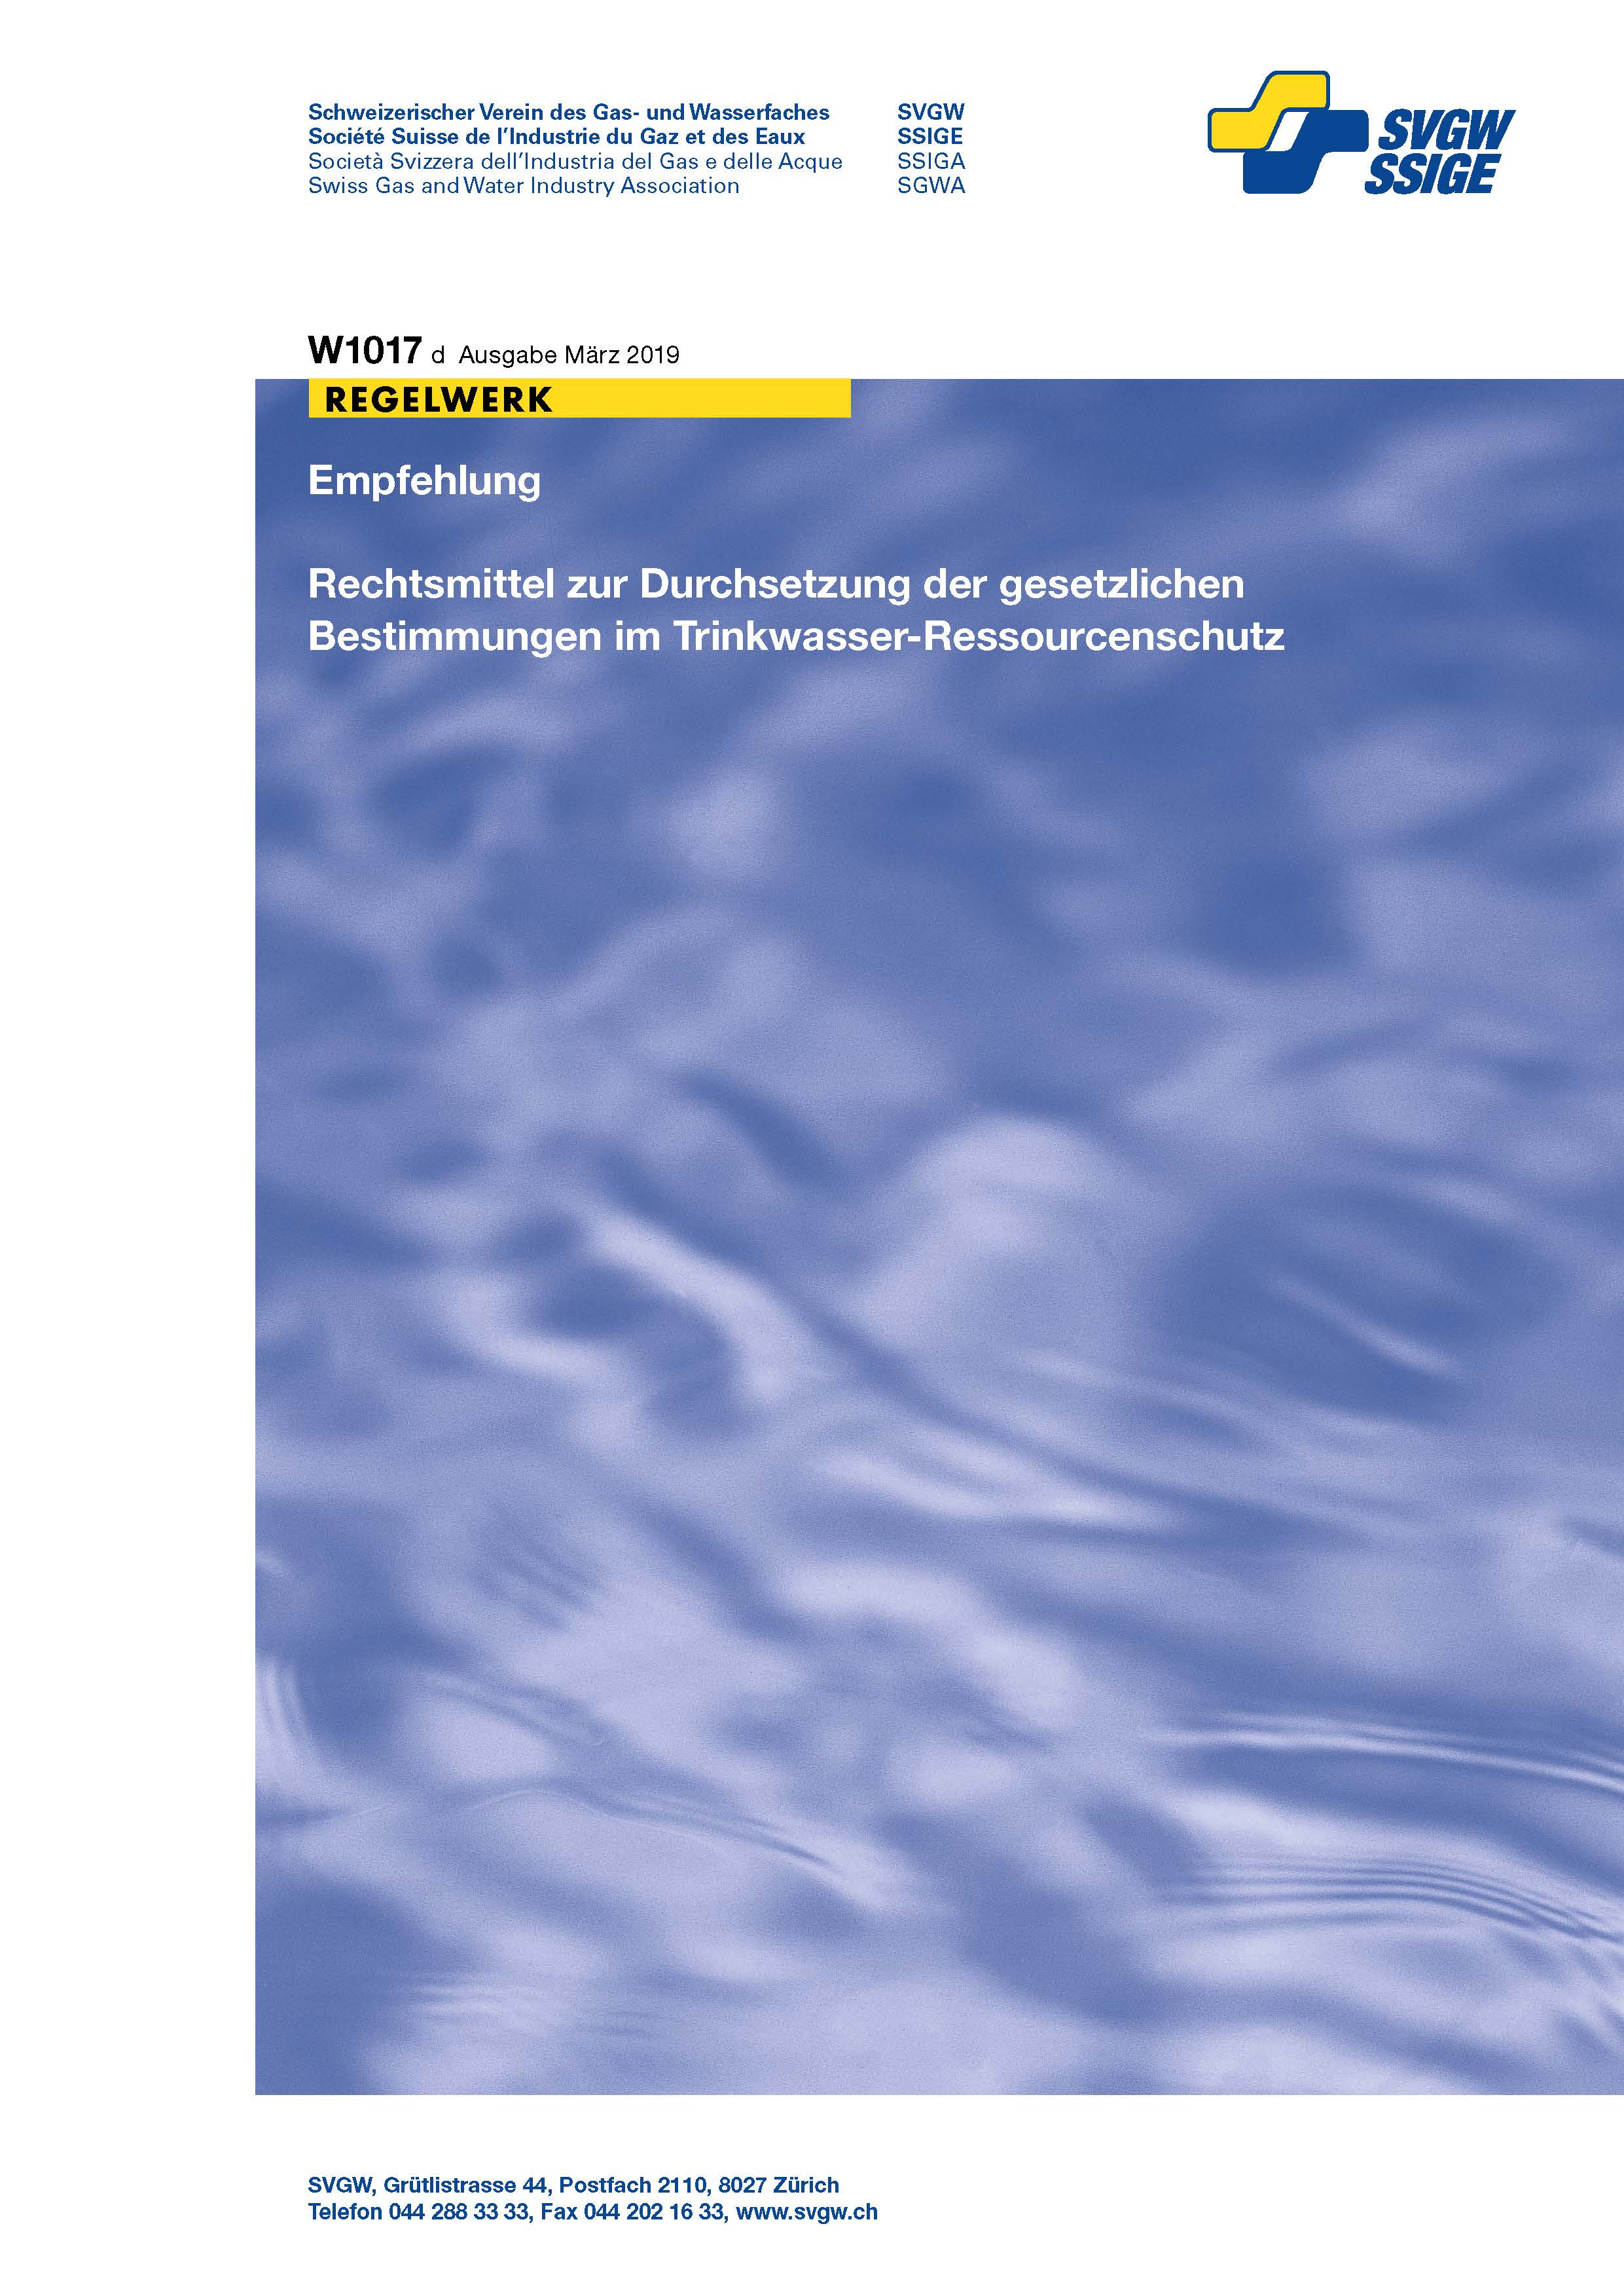 W1017 d Empfehlung; Rechtsmittel zur Durchsetzung der gesetzlichen Bestimmungen im Trinkwasser-Ressourcenschutz (2)